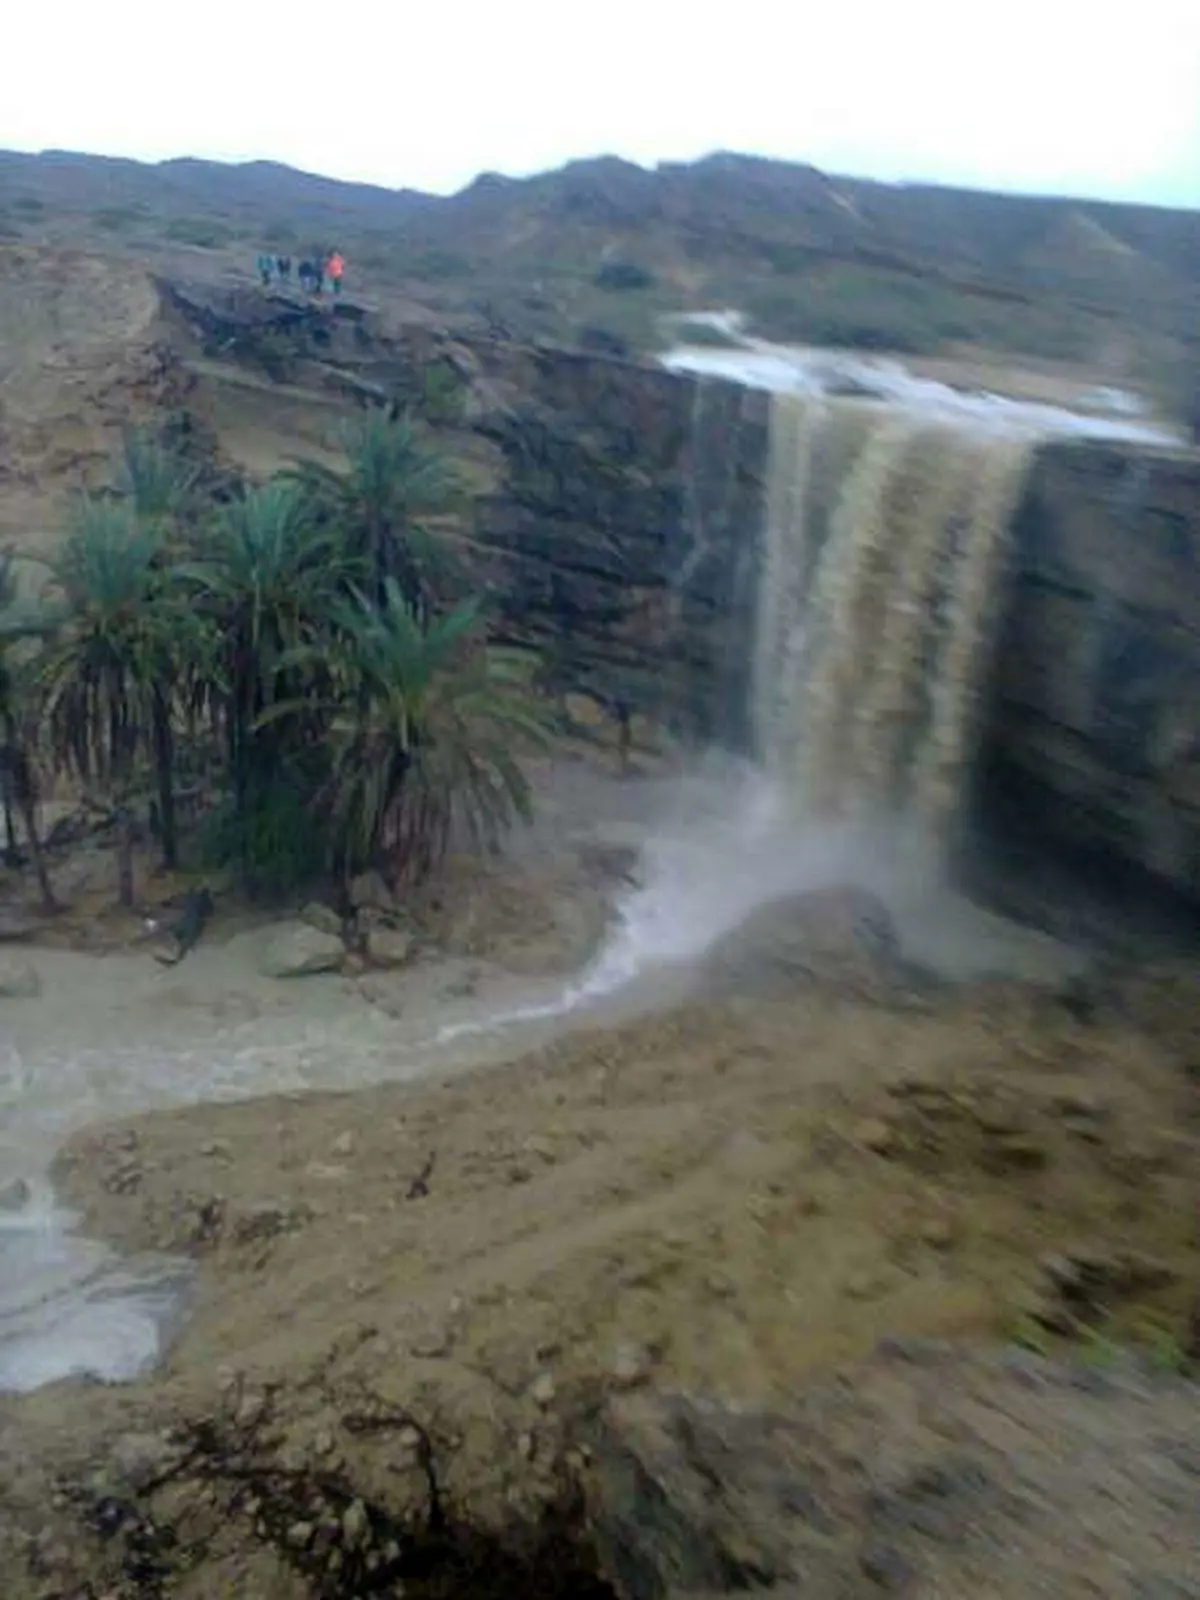  2 مسیر در سیستان و بلوچستان بر اثر سیلاب مسدود شد